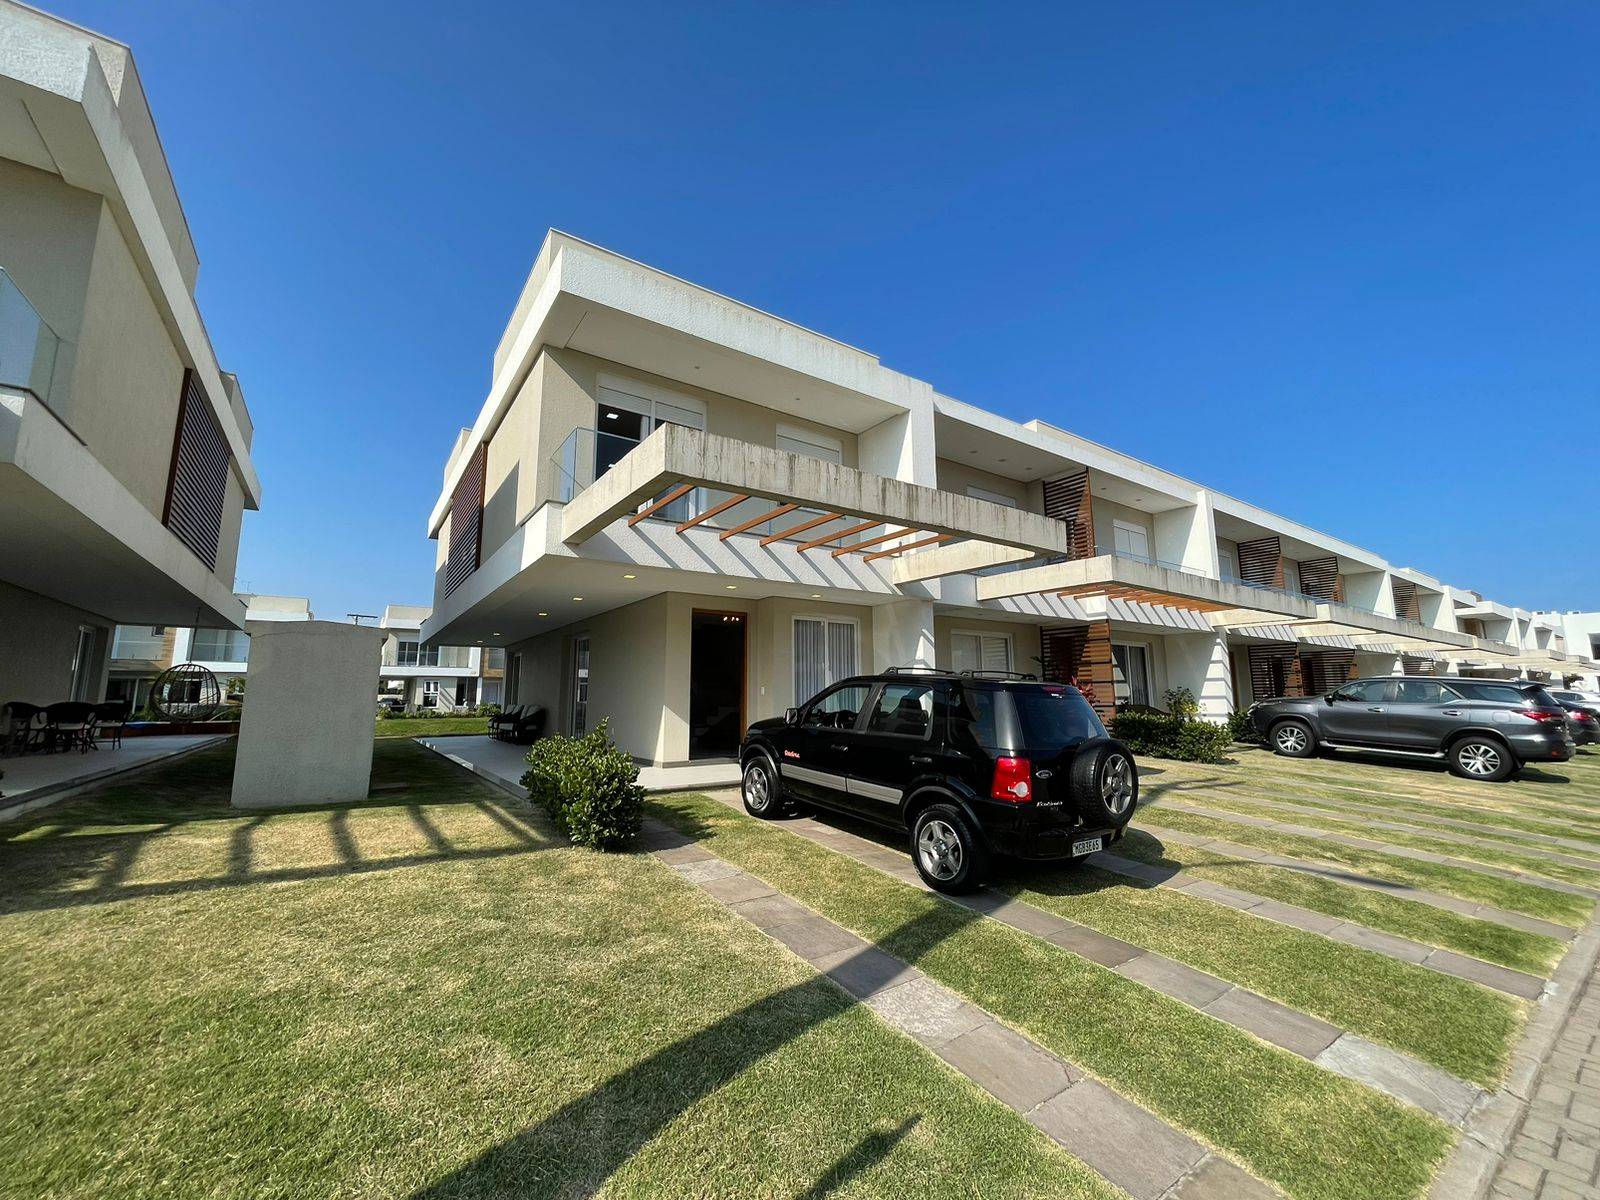 Casa em Condomínio 3 dormitórios para venda, Condomínio Murano - Zona Nova em Capão da Canoa | Ref.: 8054